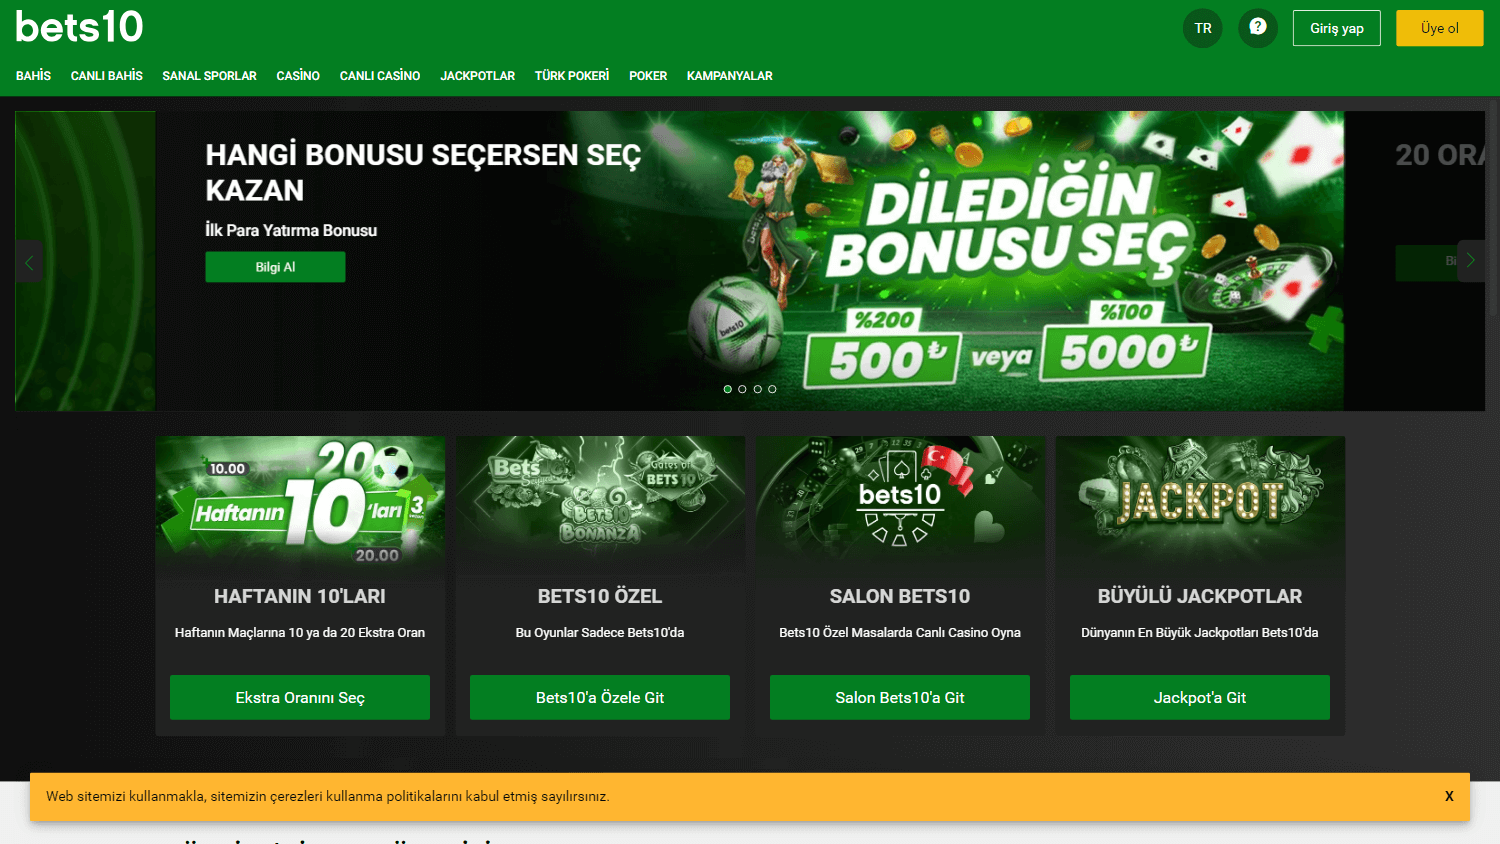 bets10_casino_homepage_desktop